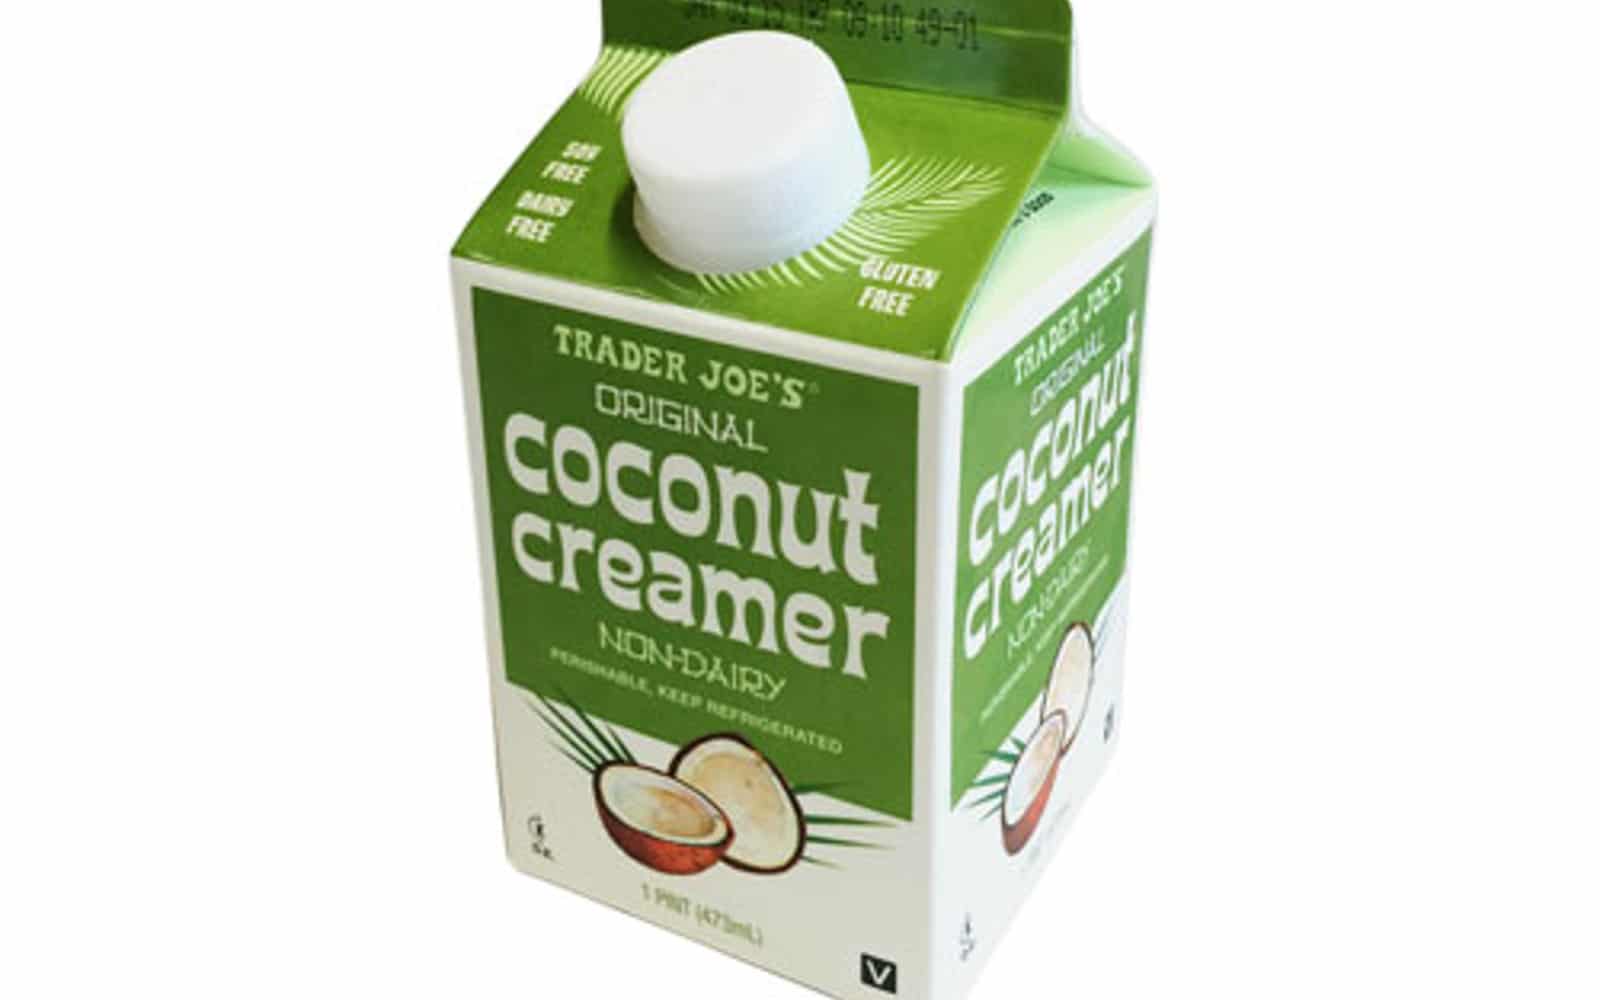 Trader Joe’s Coconut Creamer